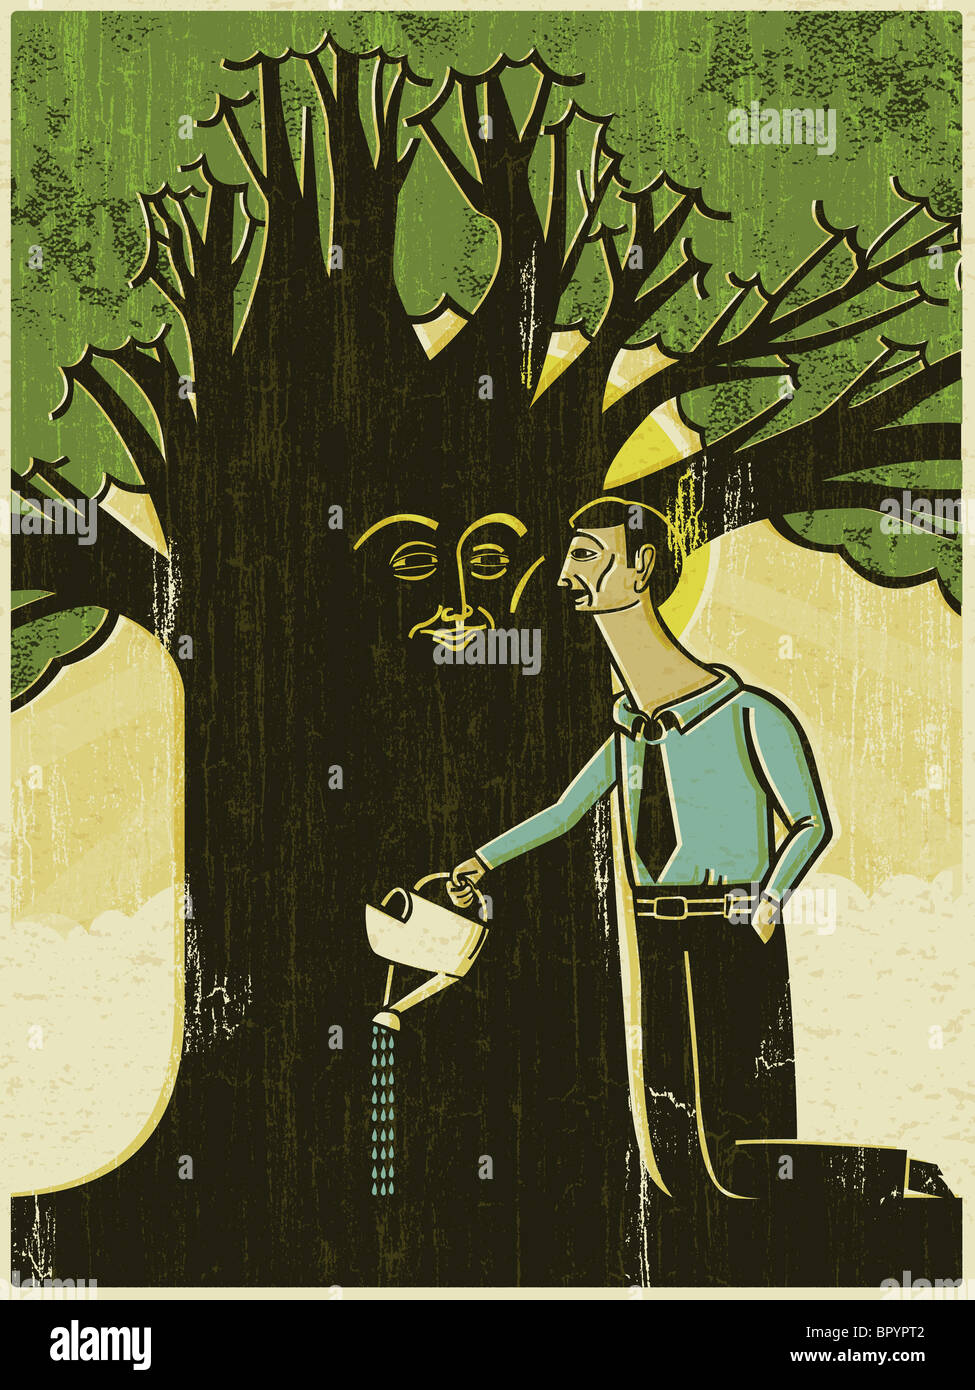 Un homme d'arroser un arbre avec un visage sur le tronc Banque D'Images